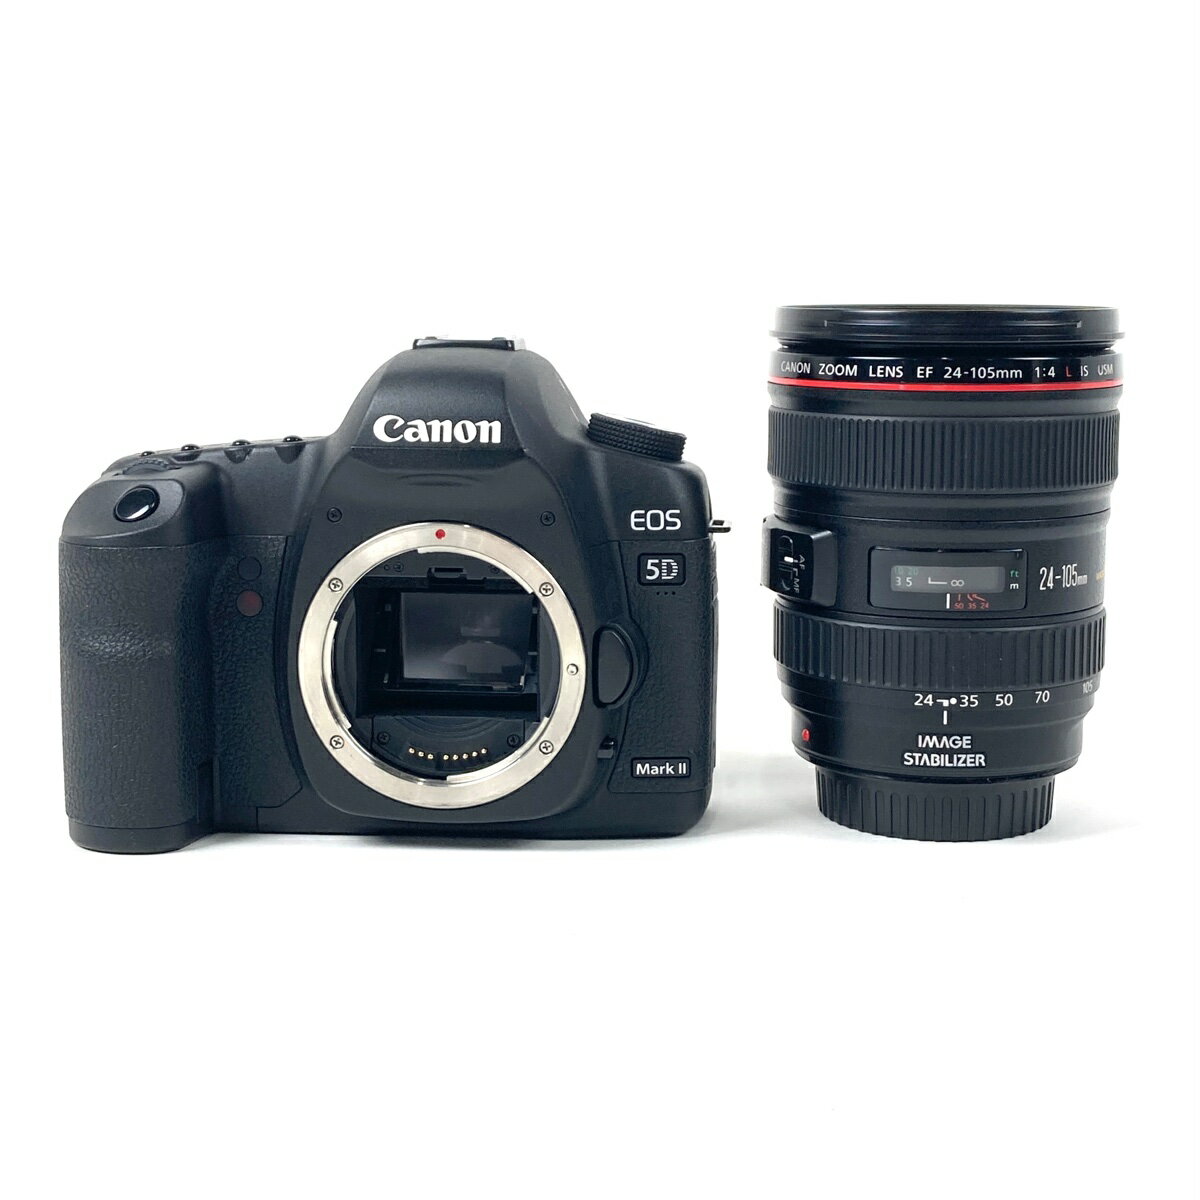 キヤノン Canon EOS 5D Mark II + EF 24-105mm F4L USM デジタル 一眼レフカメラ 【中古】